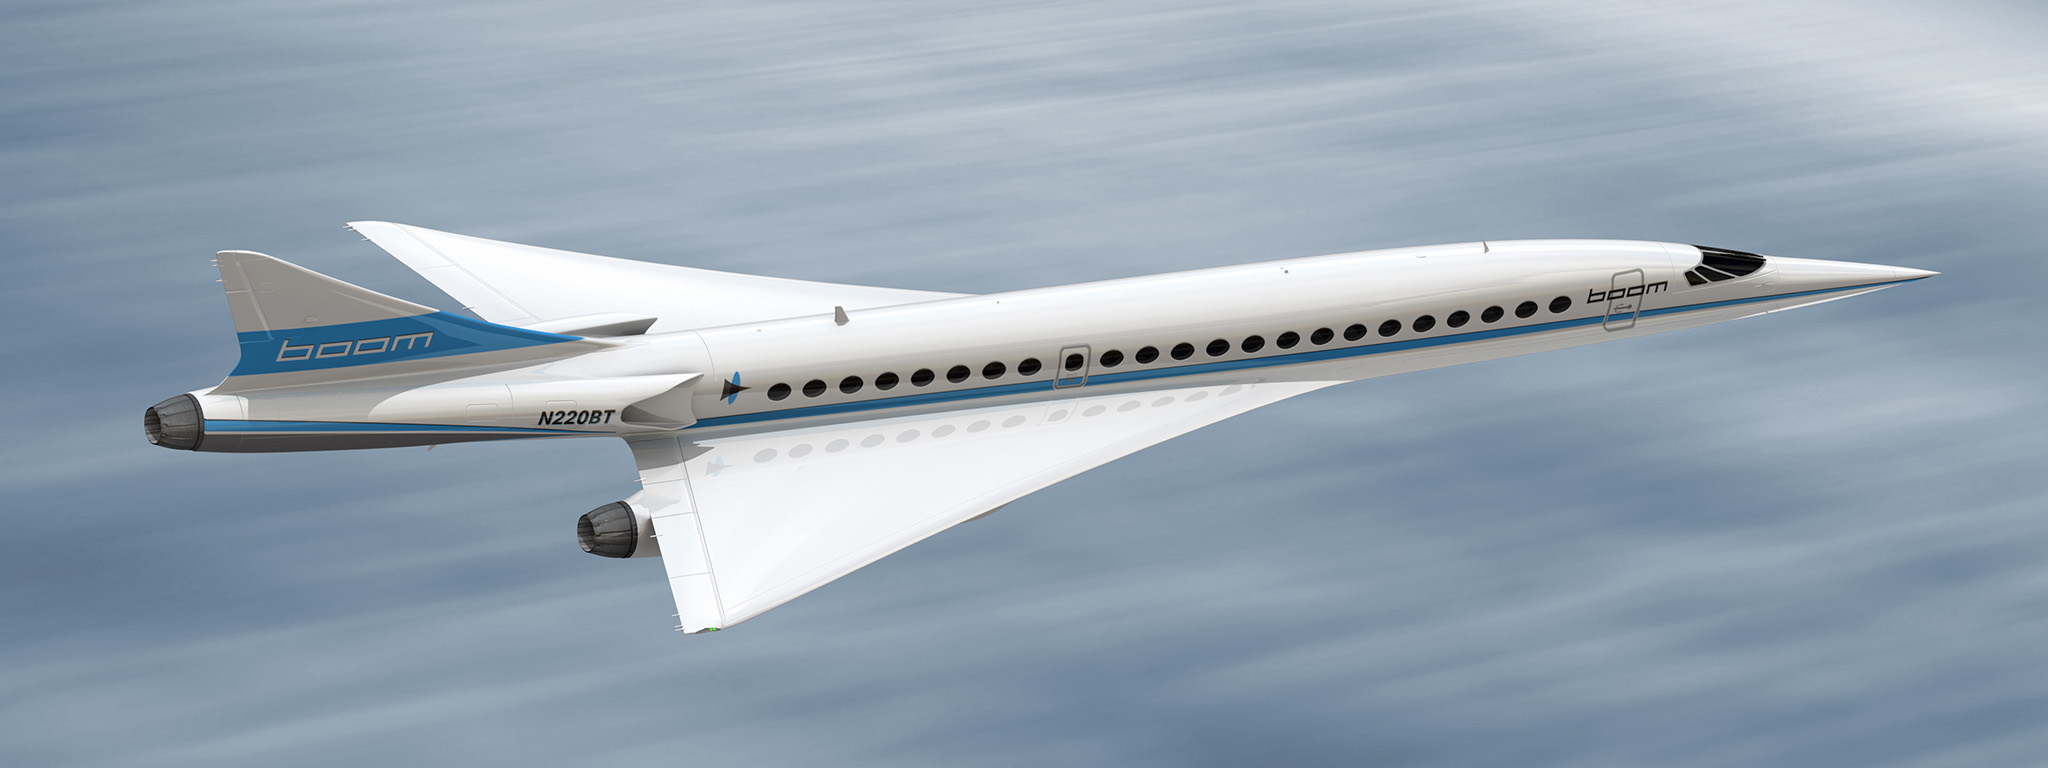 Boom Supersonic được Japan Airlines đầu tư 10 triệu đô, hàng không siêu thanh lại có đà cất cánh